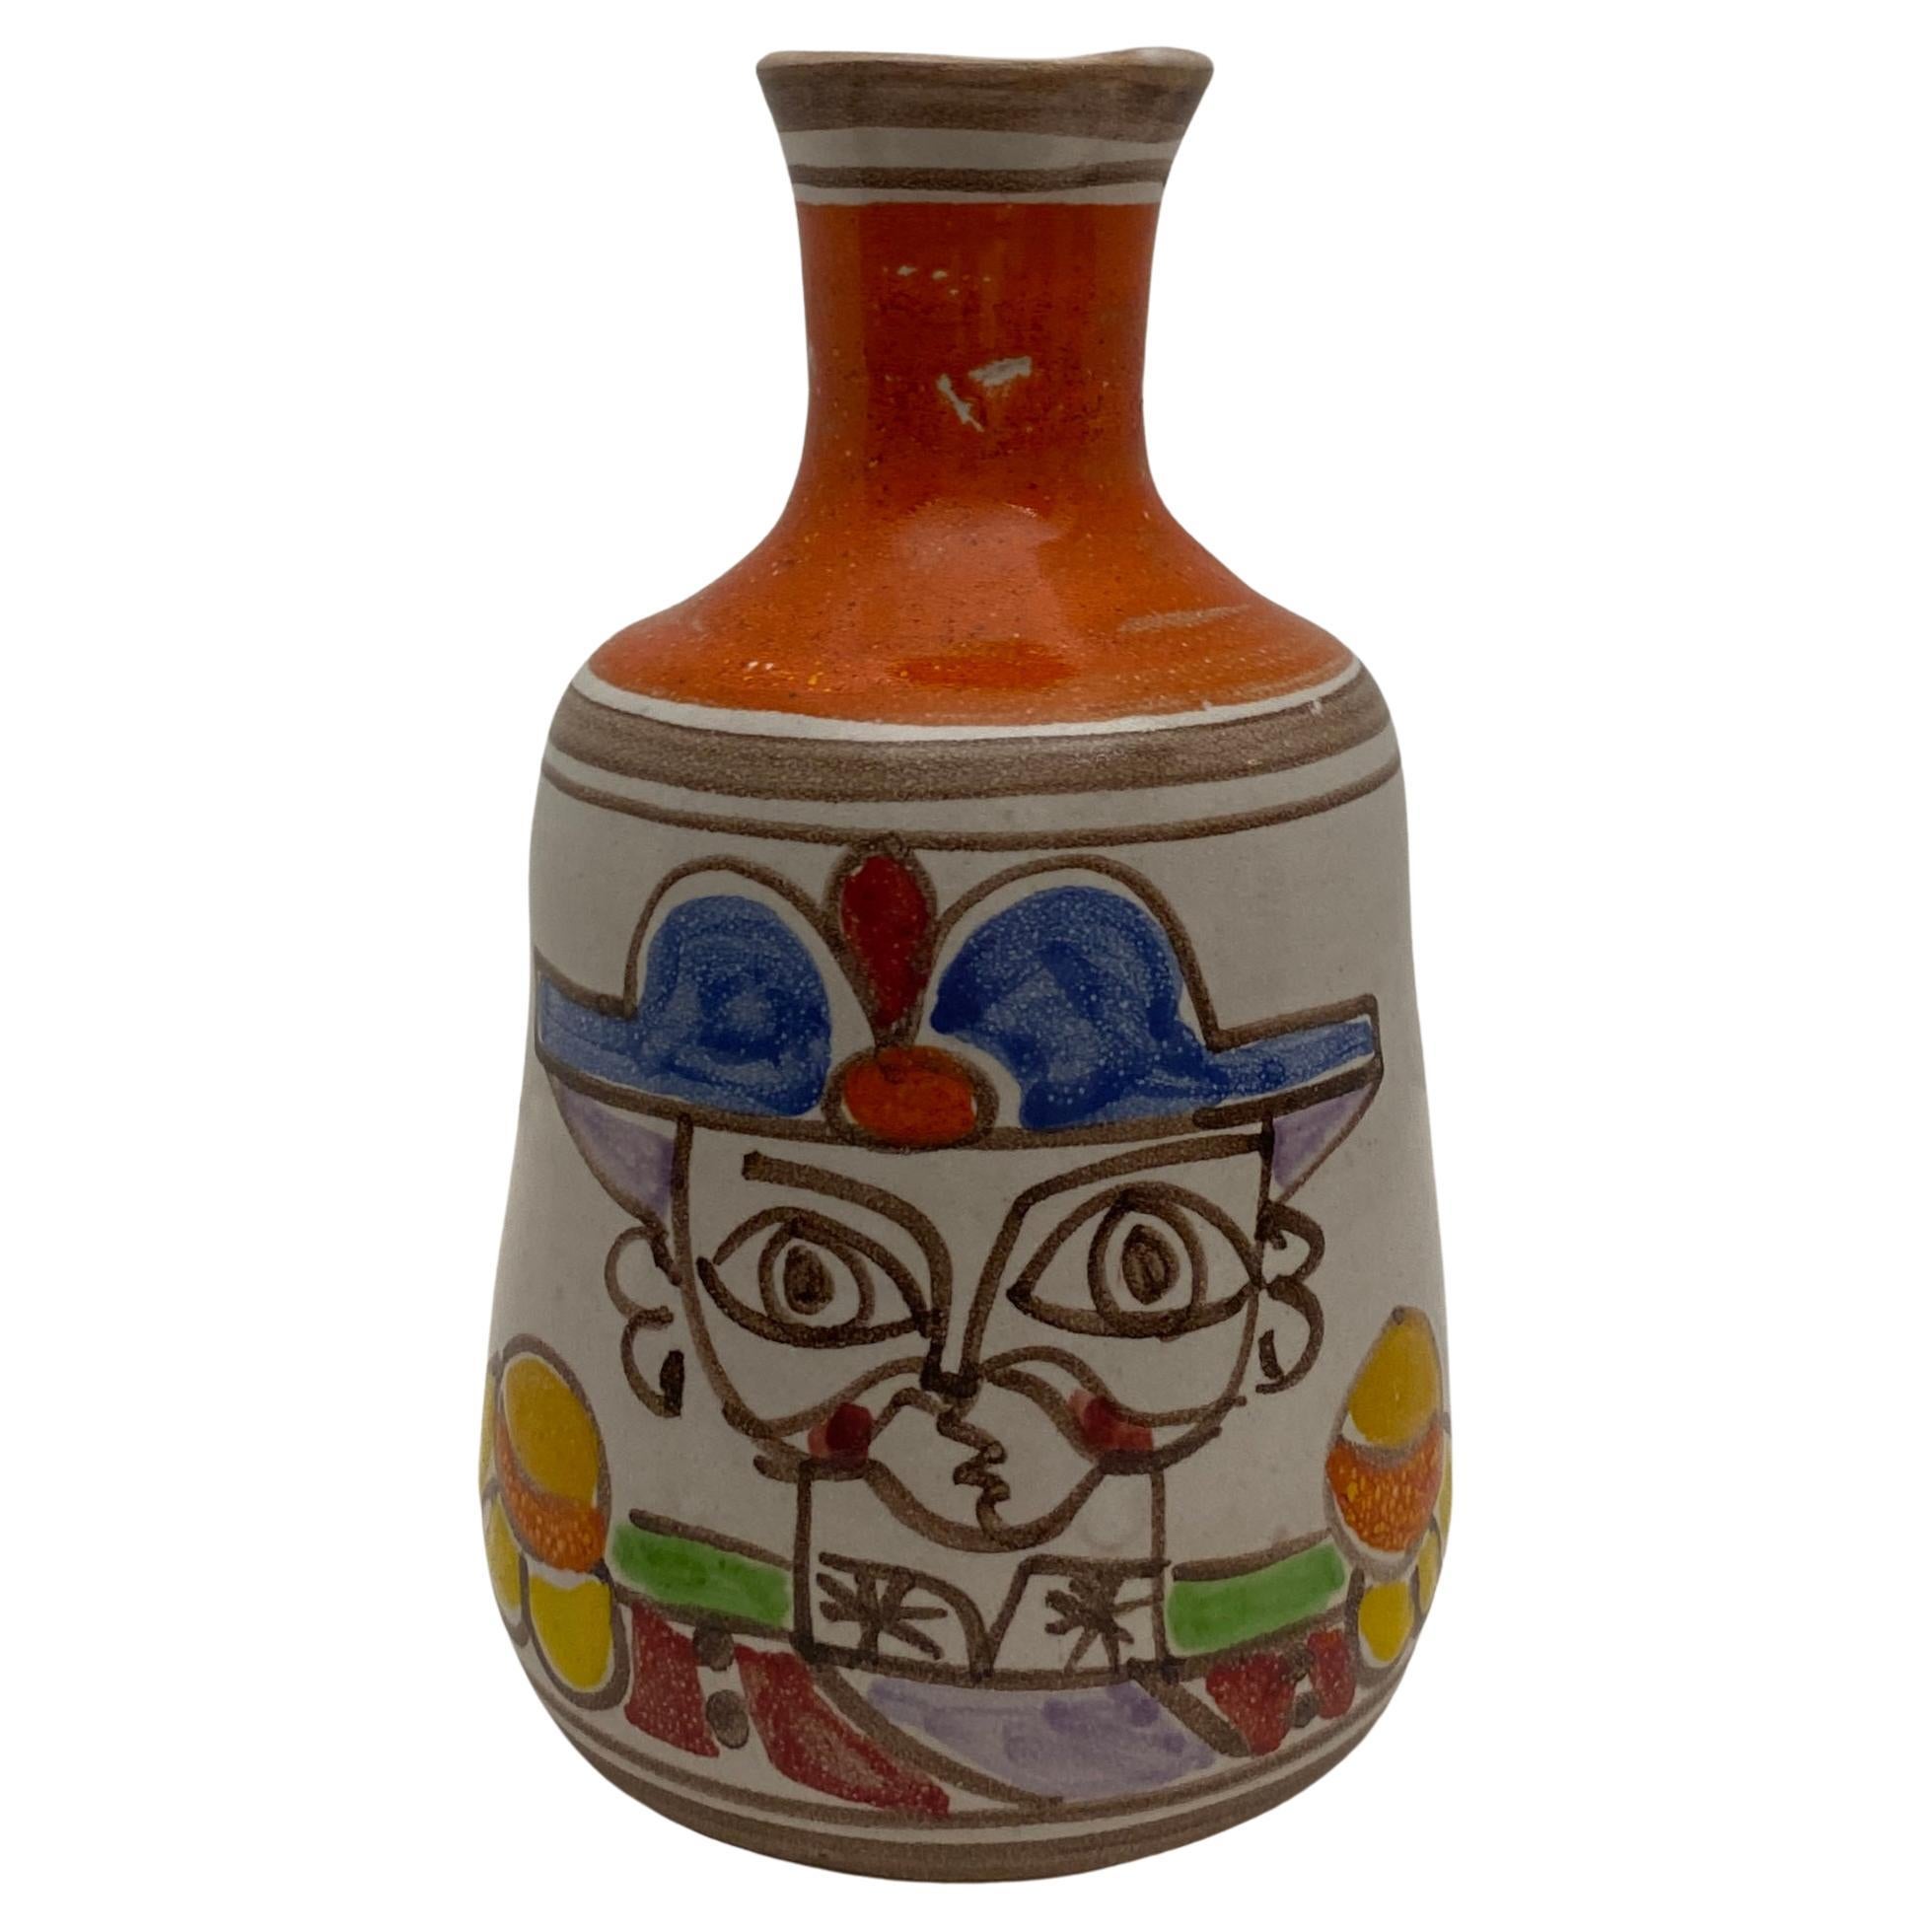 Desimone Keramikvase mit Krugvase